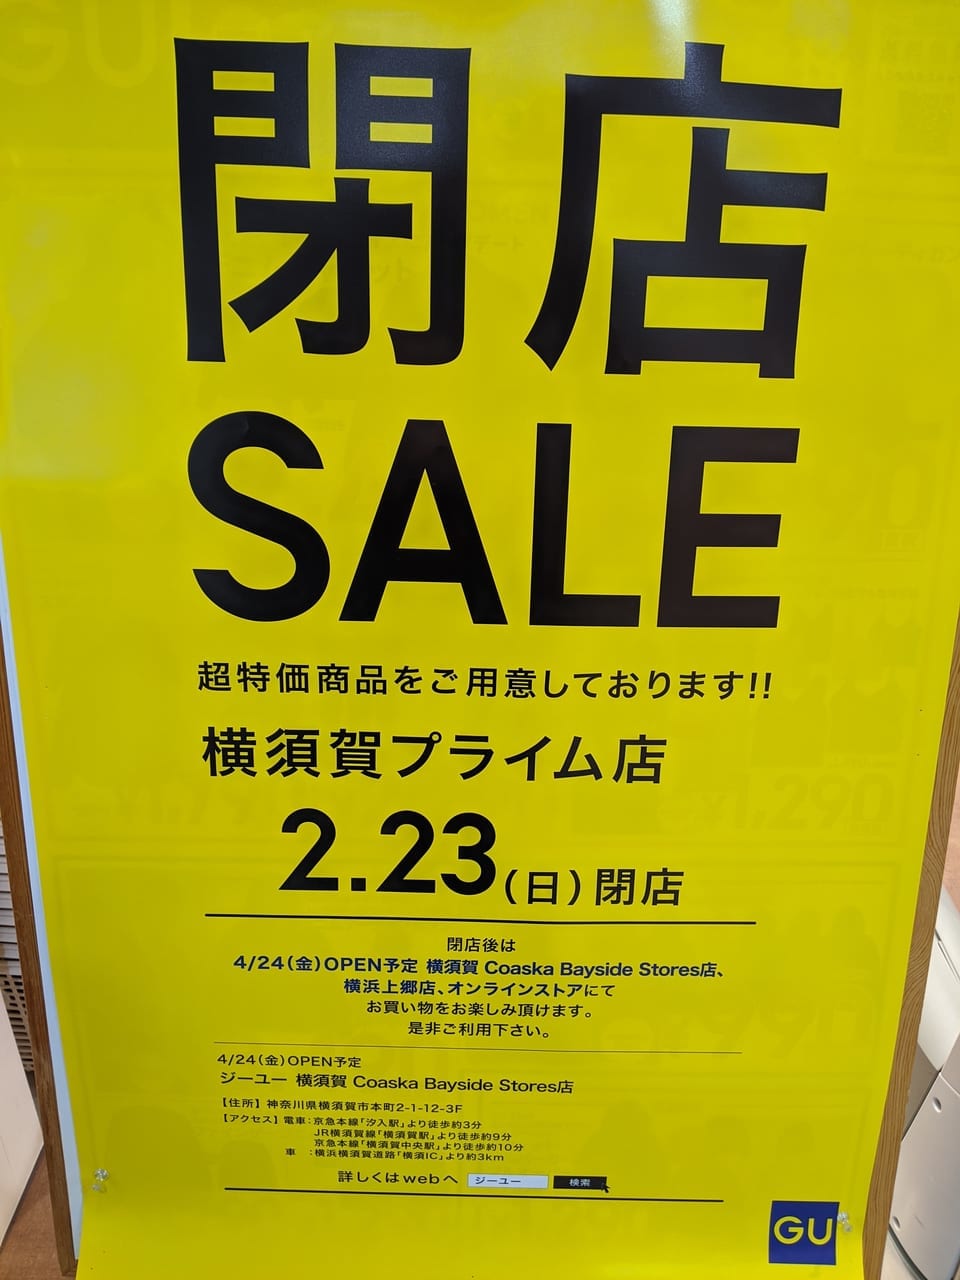 横須賀市 横須賀プライム店 Gu が閉店 4月openのコースカベイサイドストアーズ店へ移動となるようです 号外net 横須賀市